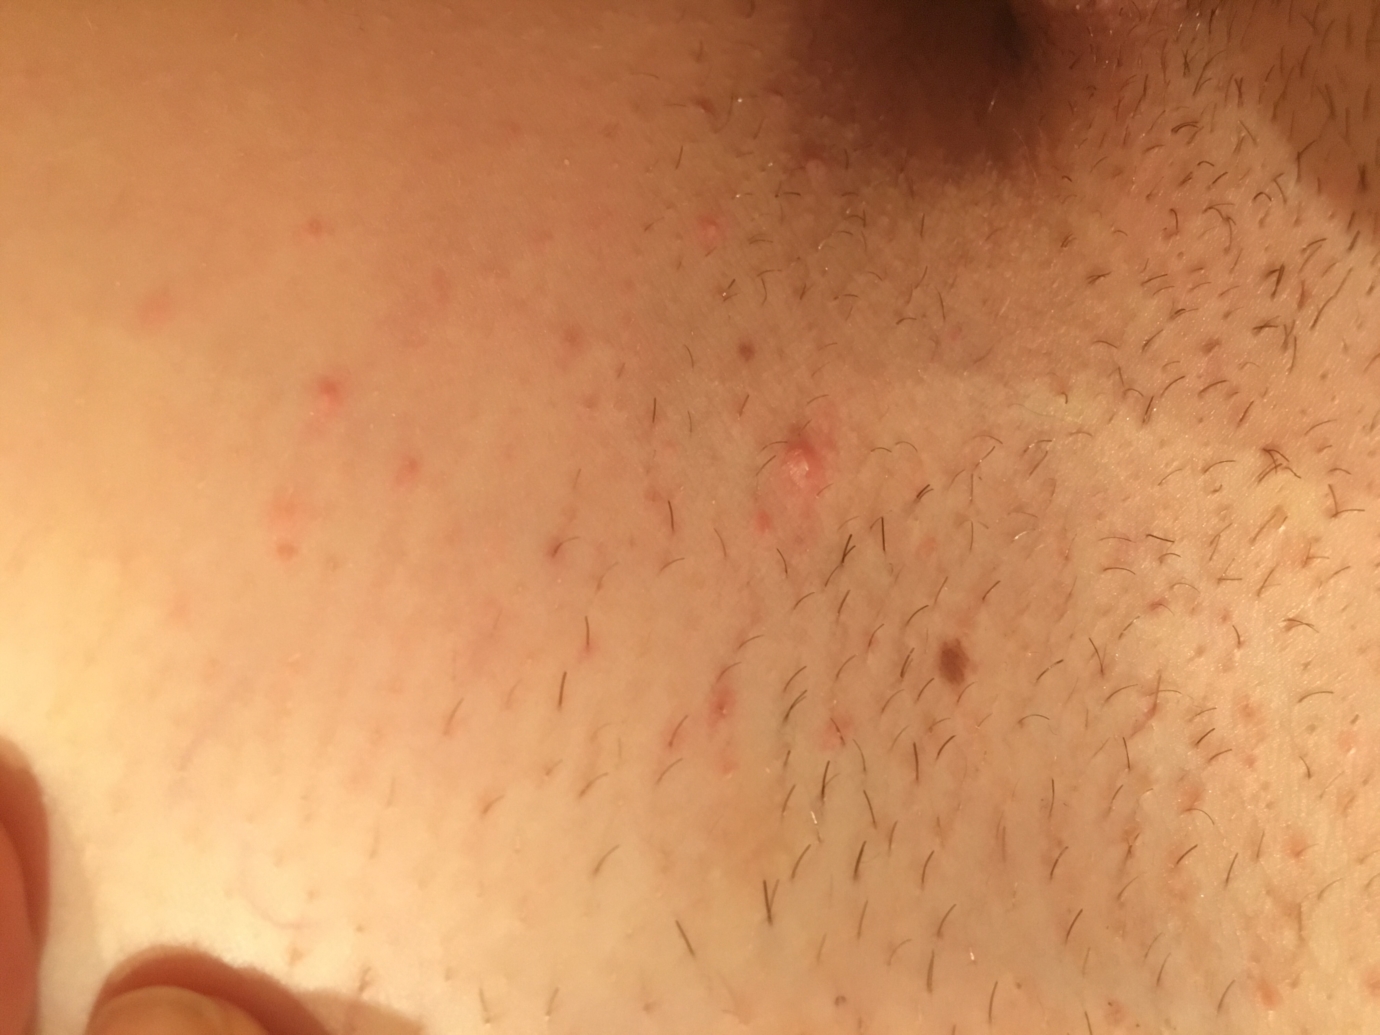 Bumps herpes razor Skin Rash